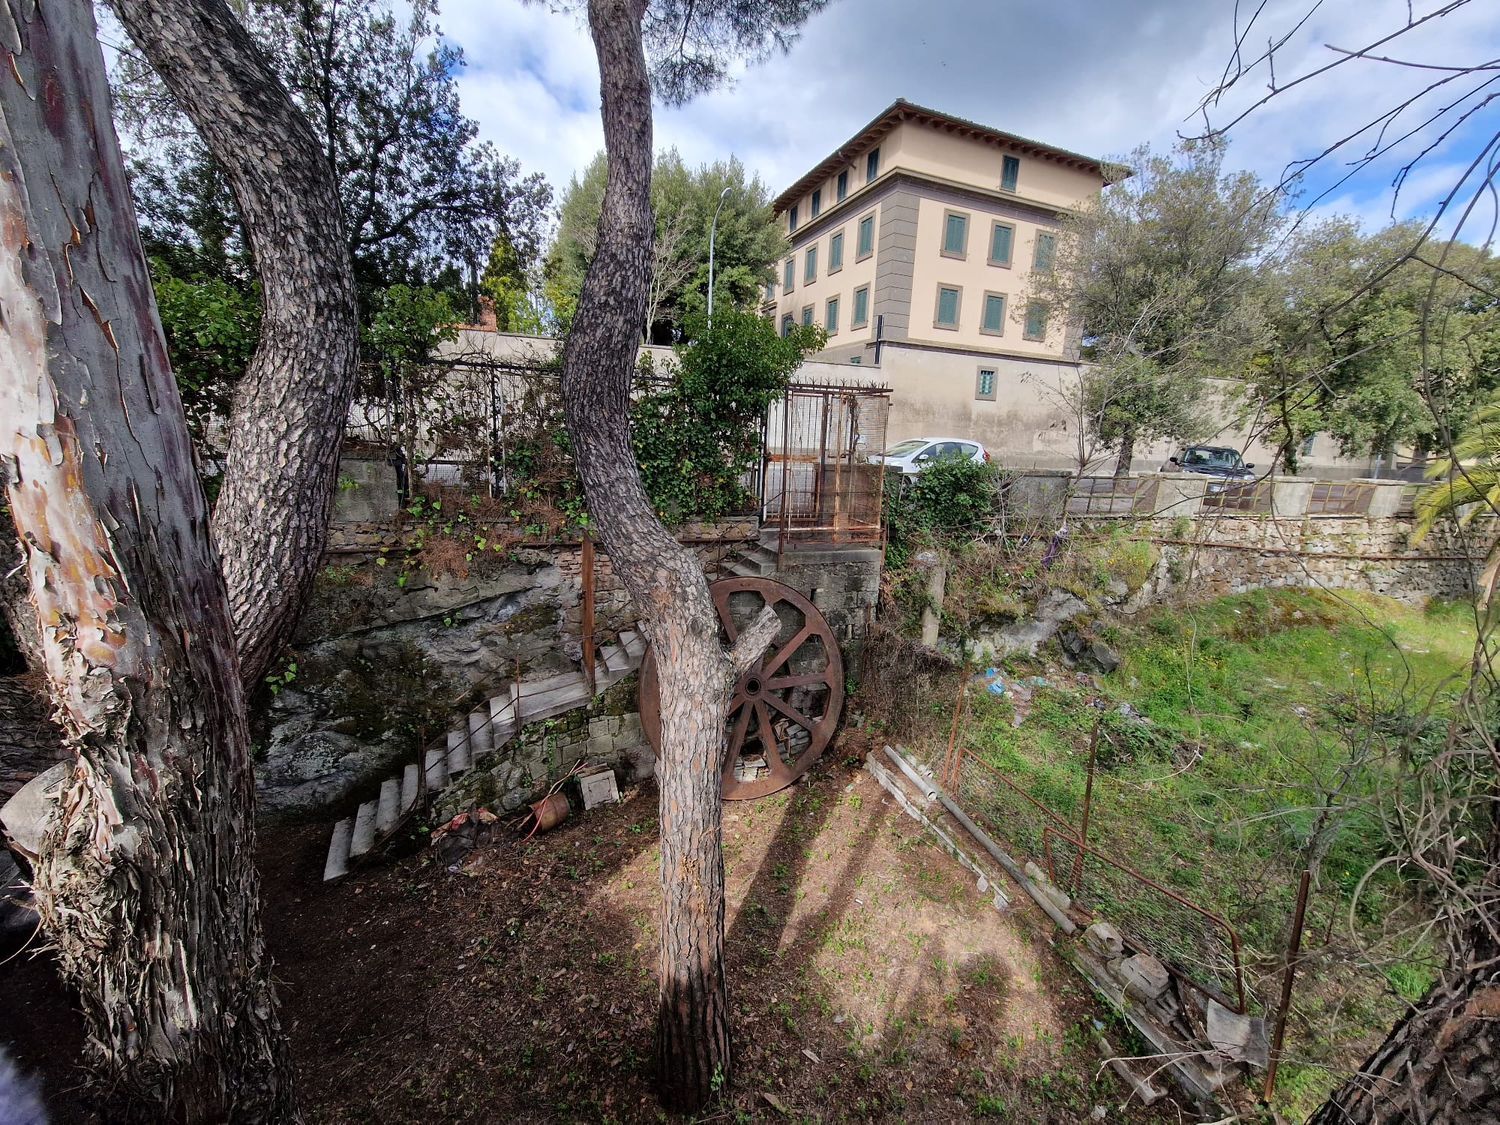 Soluzione Indipendente in vendita a Castel Gandolfo, 10 locali, prezzo € 690.000 | CambioCasa.it